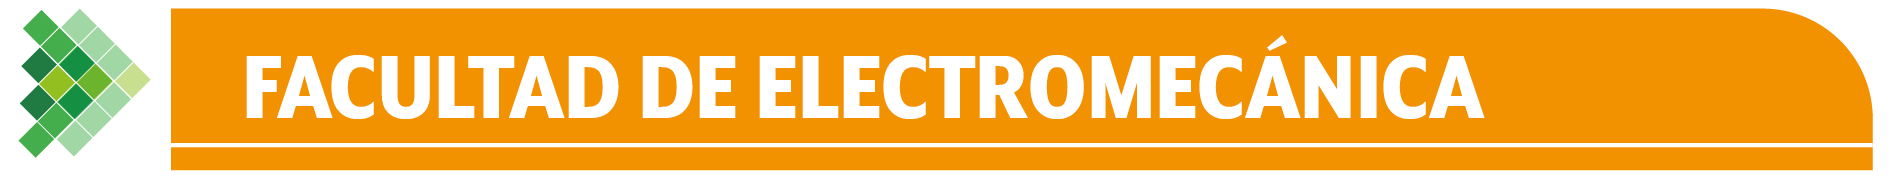 Electromecánica